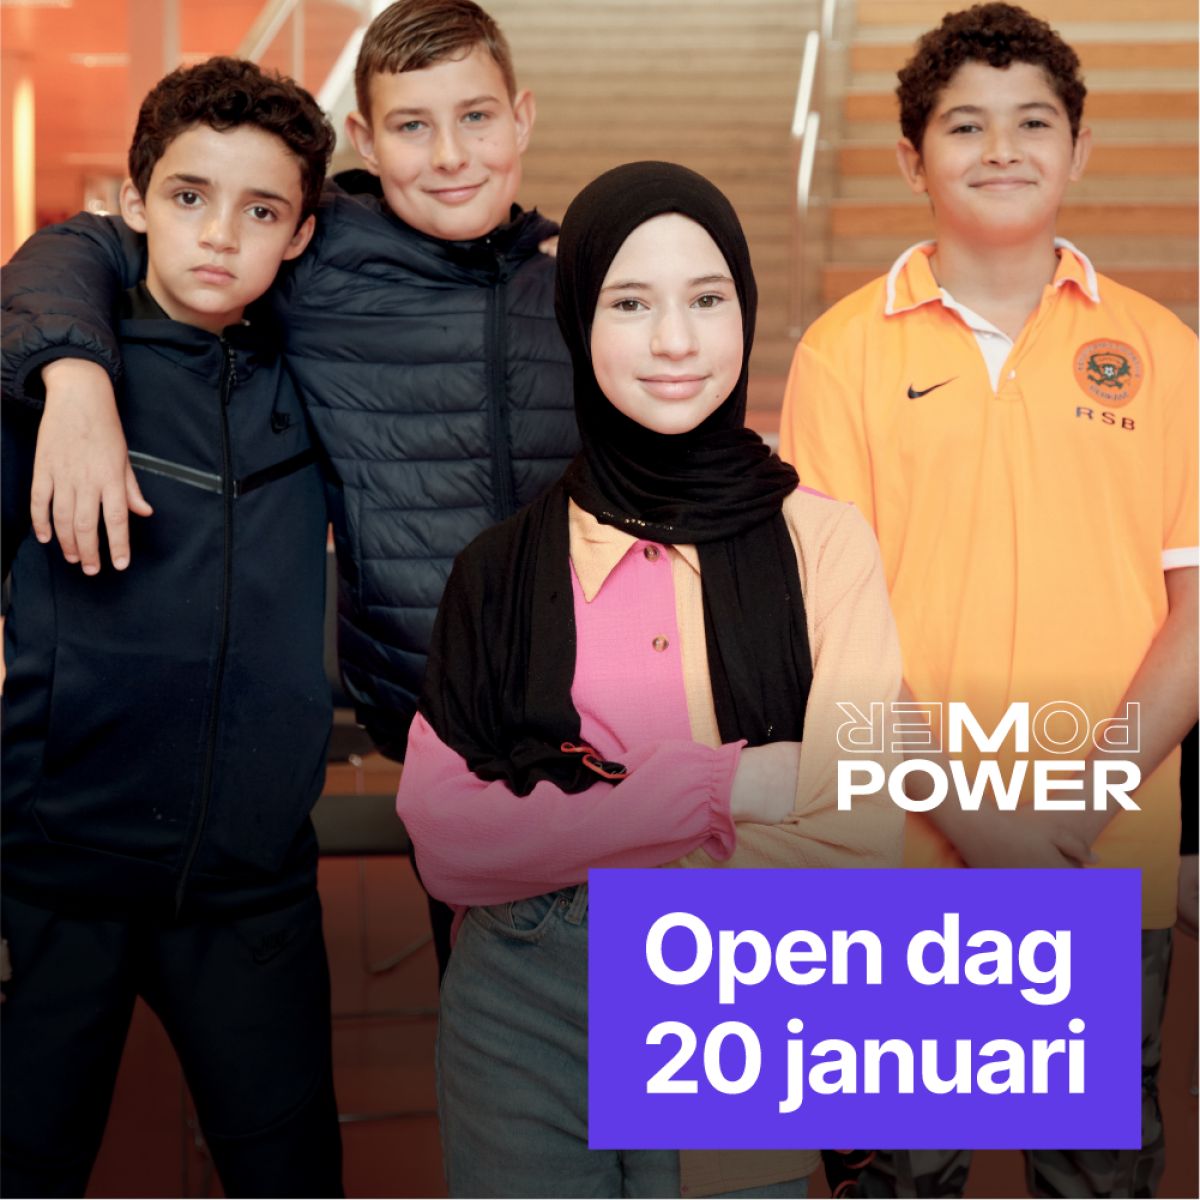 Kom naar de open dag van MPower op 20 januari!